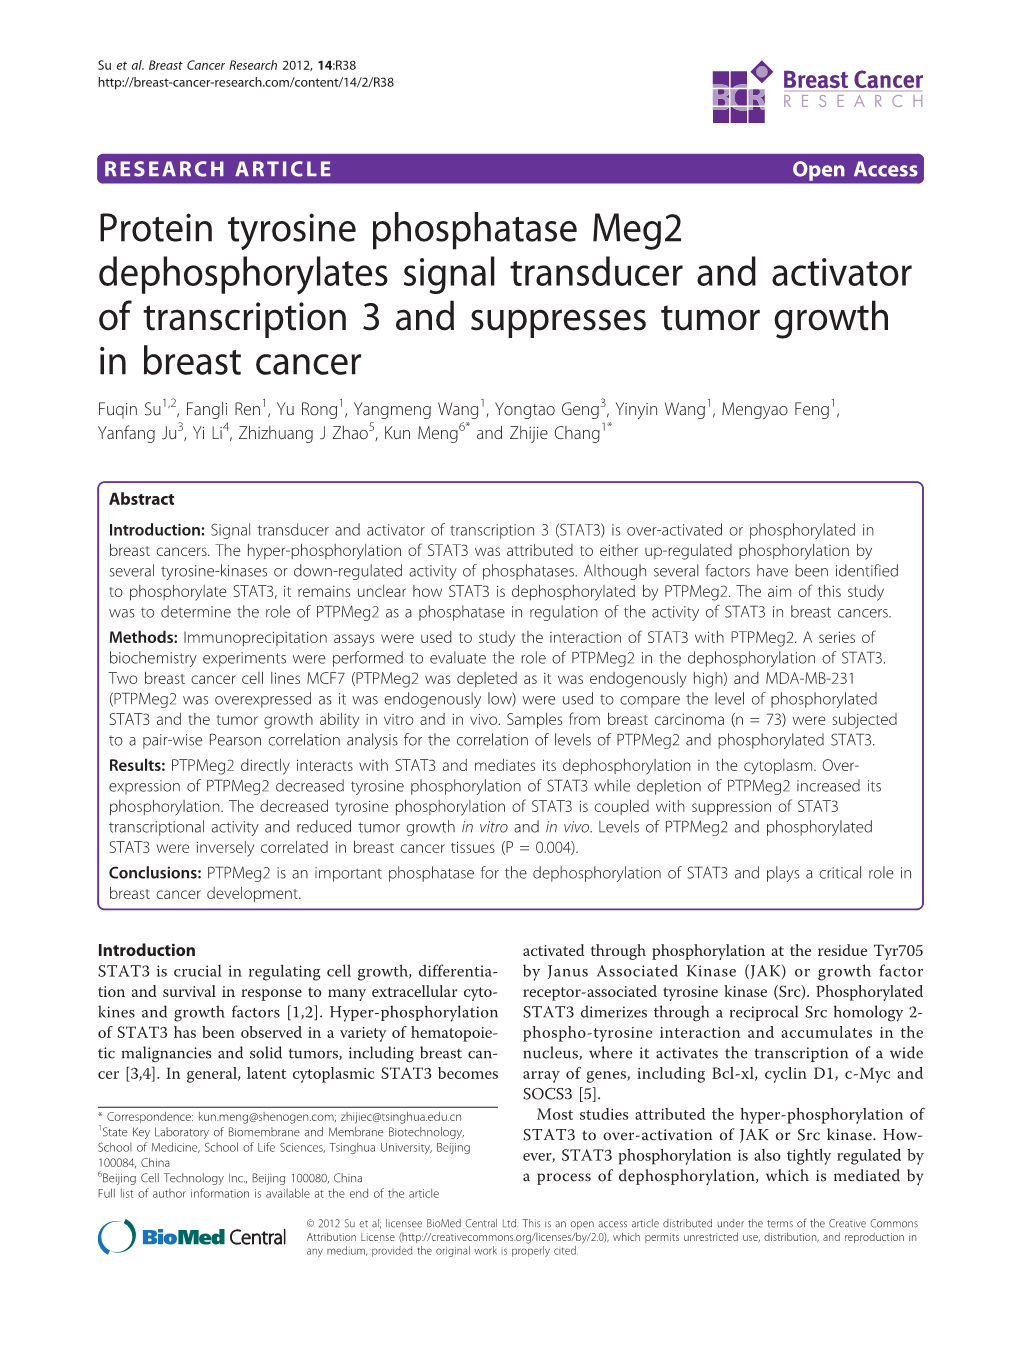 Protein Tyrosine Phosphatase Meg2 Dephosphorylates Signal Transducer